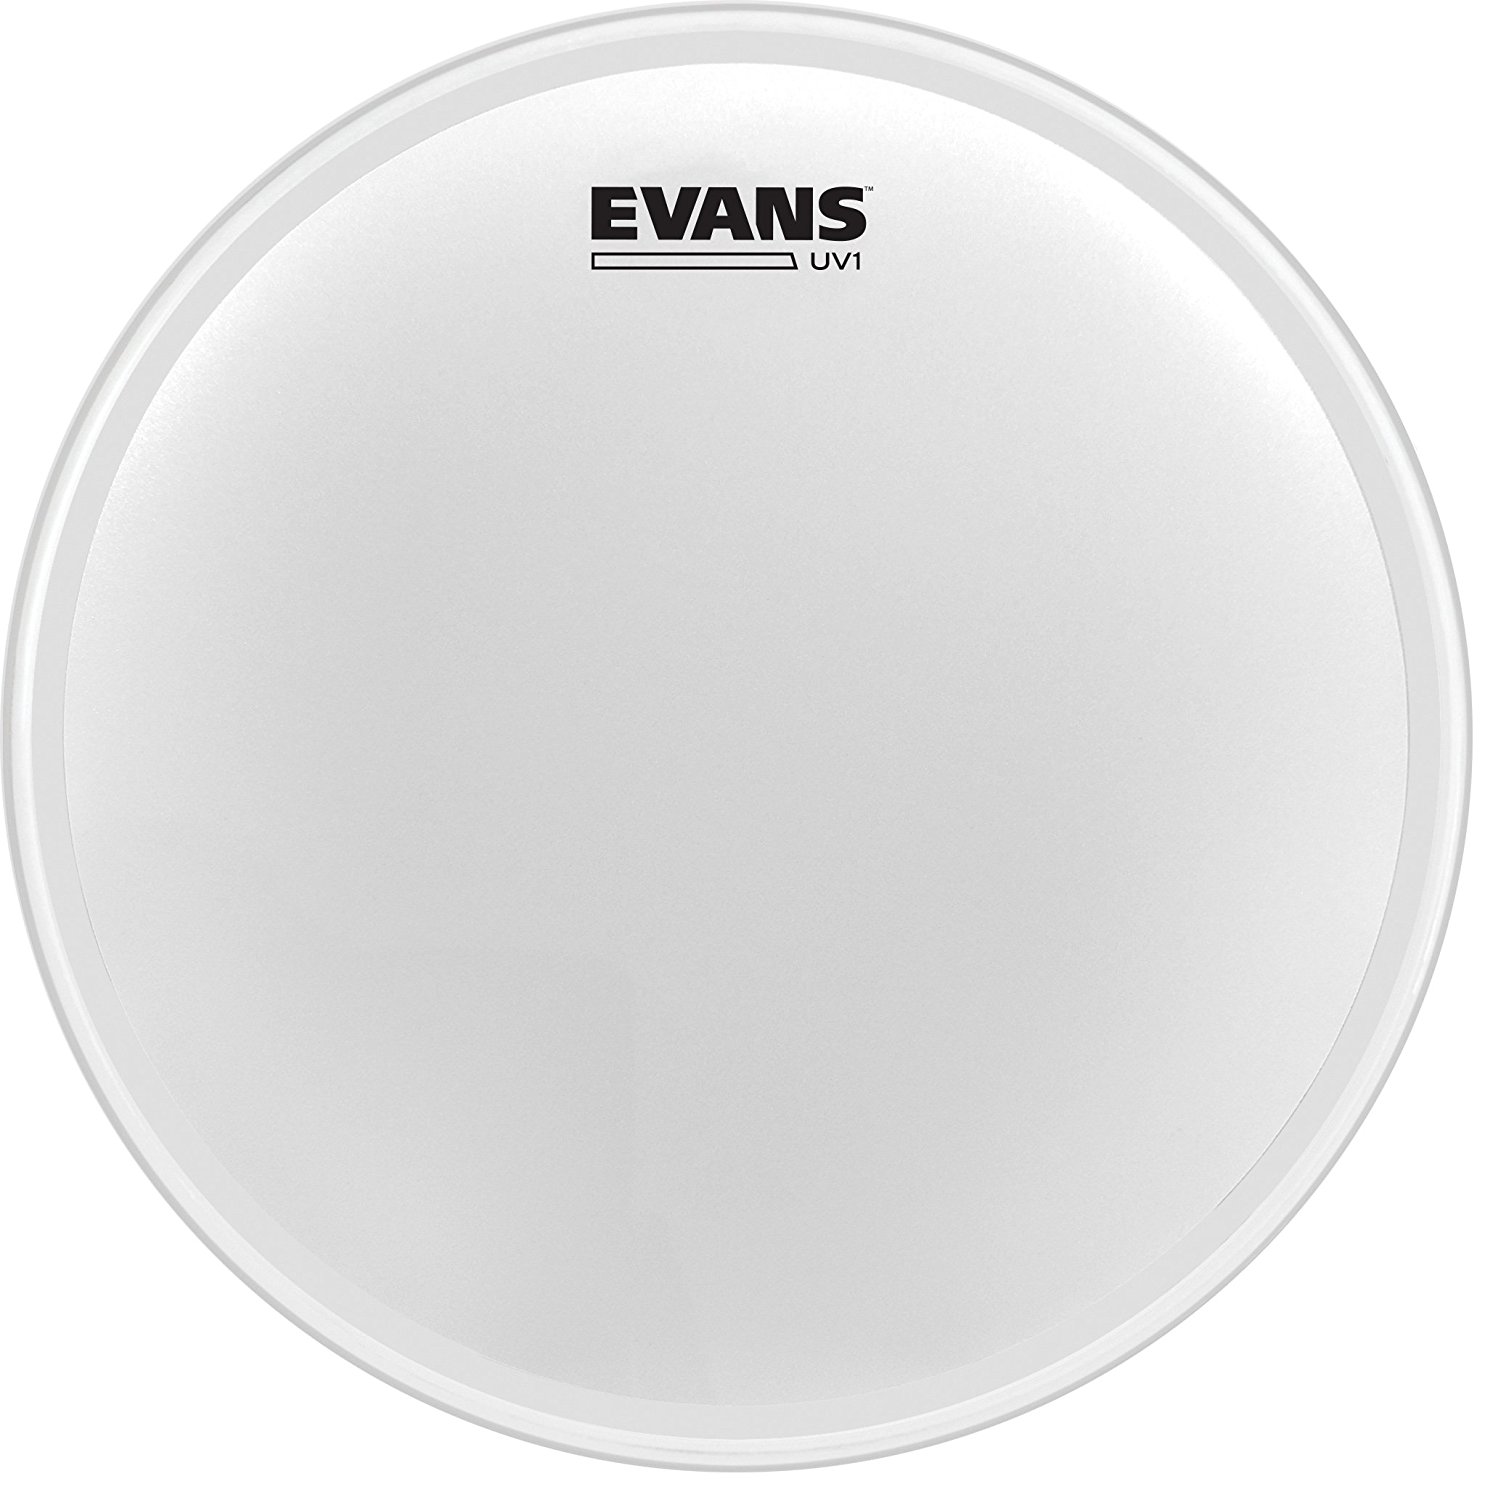 An image of Evans UV1 Coated Snare/Tom Batter 16" | PMT Online